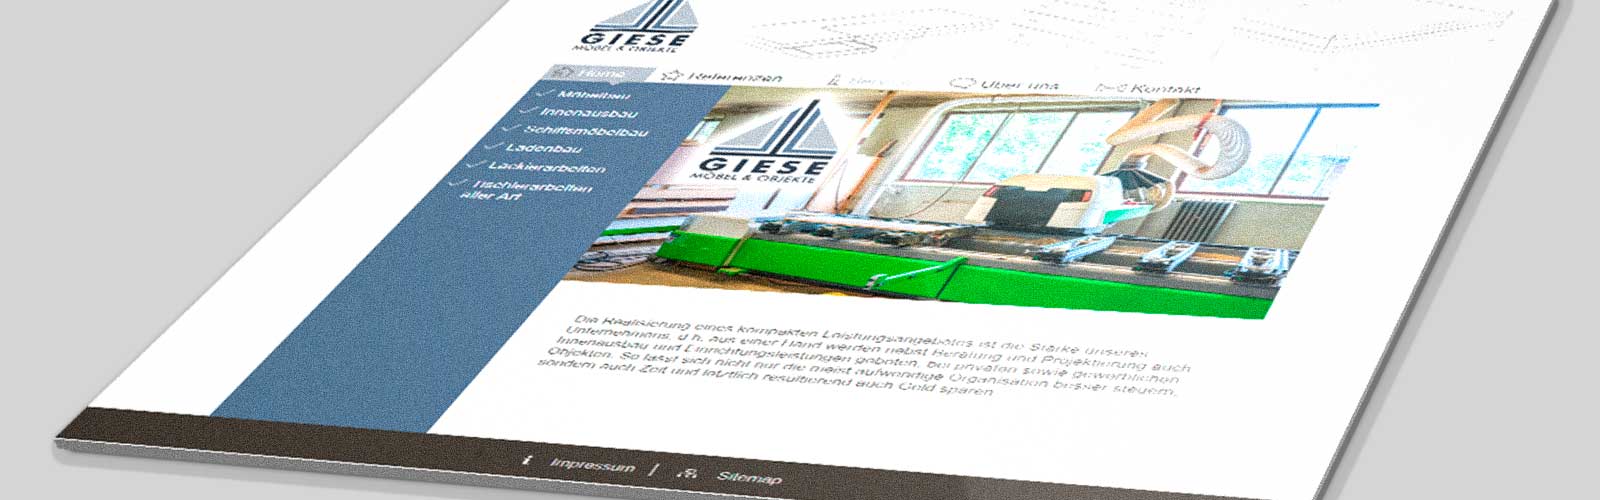 Beispiel Webdesign für die Firma Giese